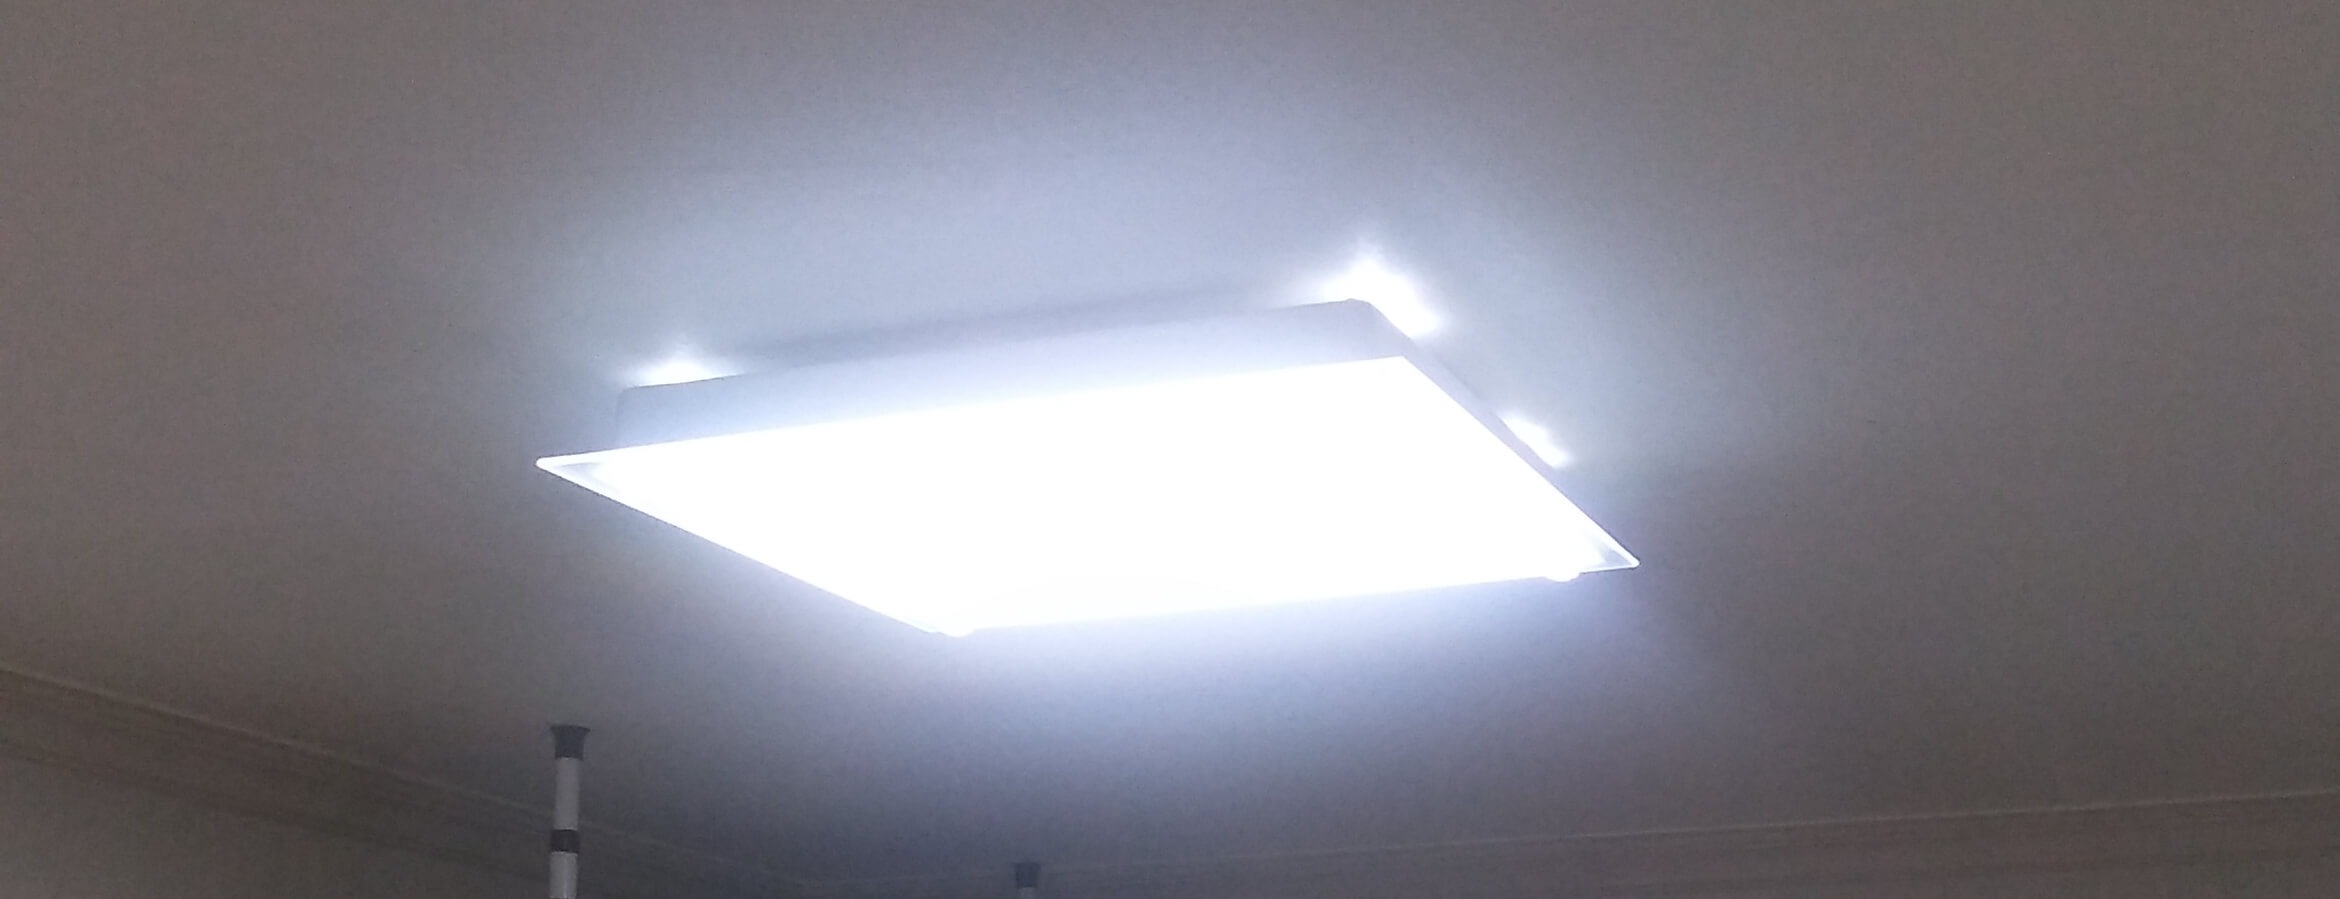 LED등